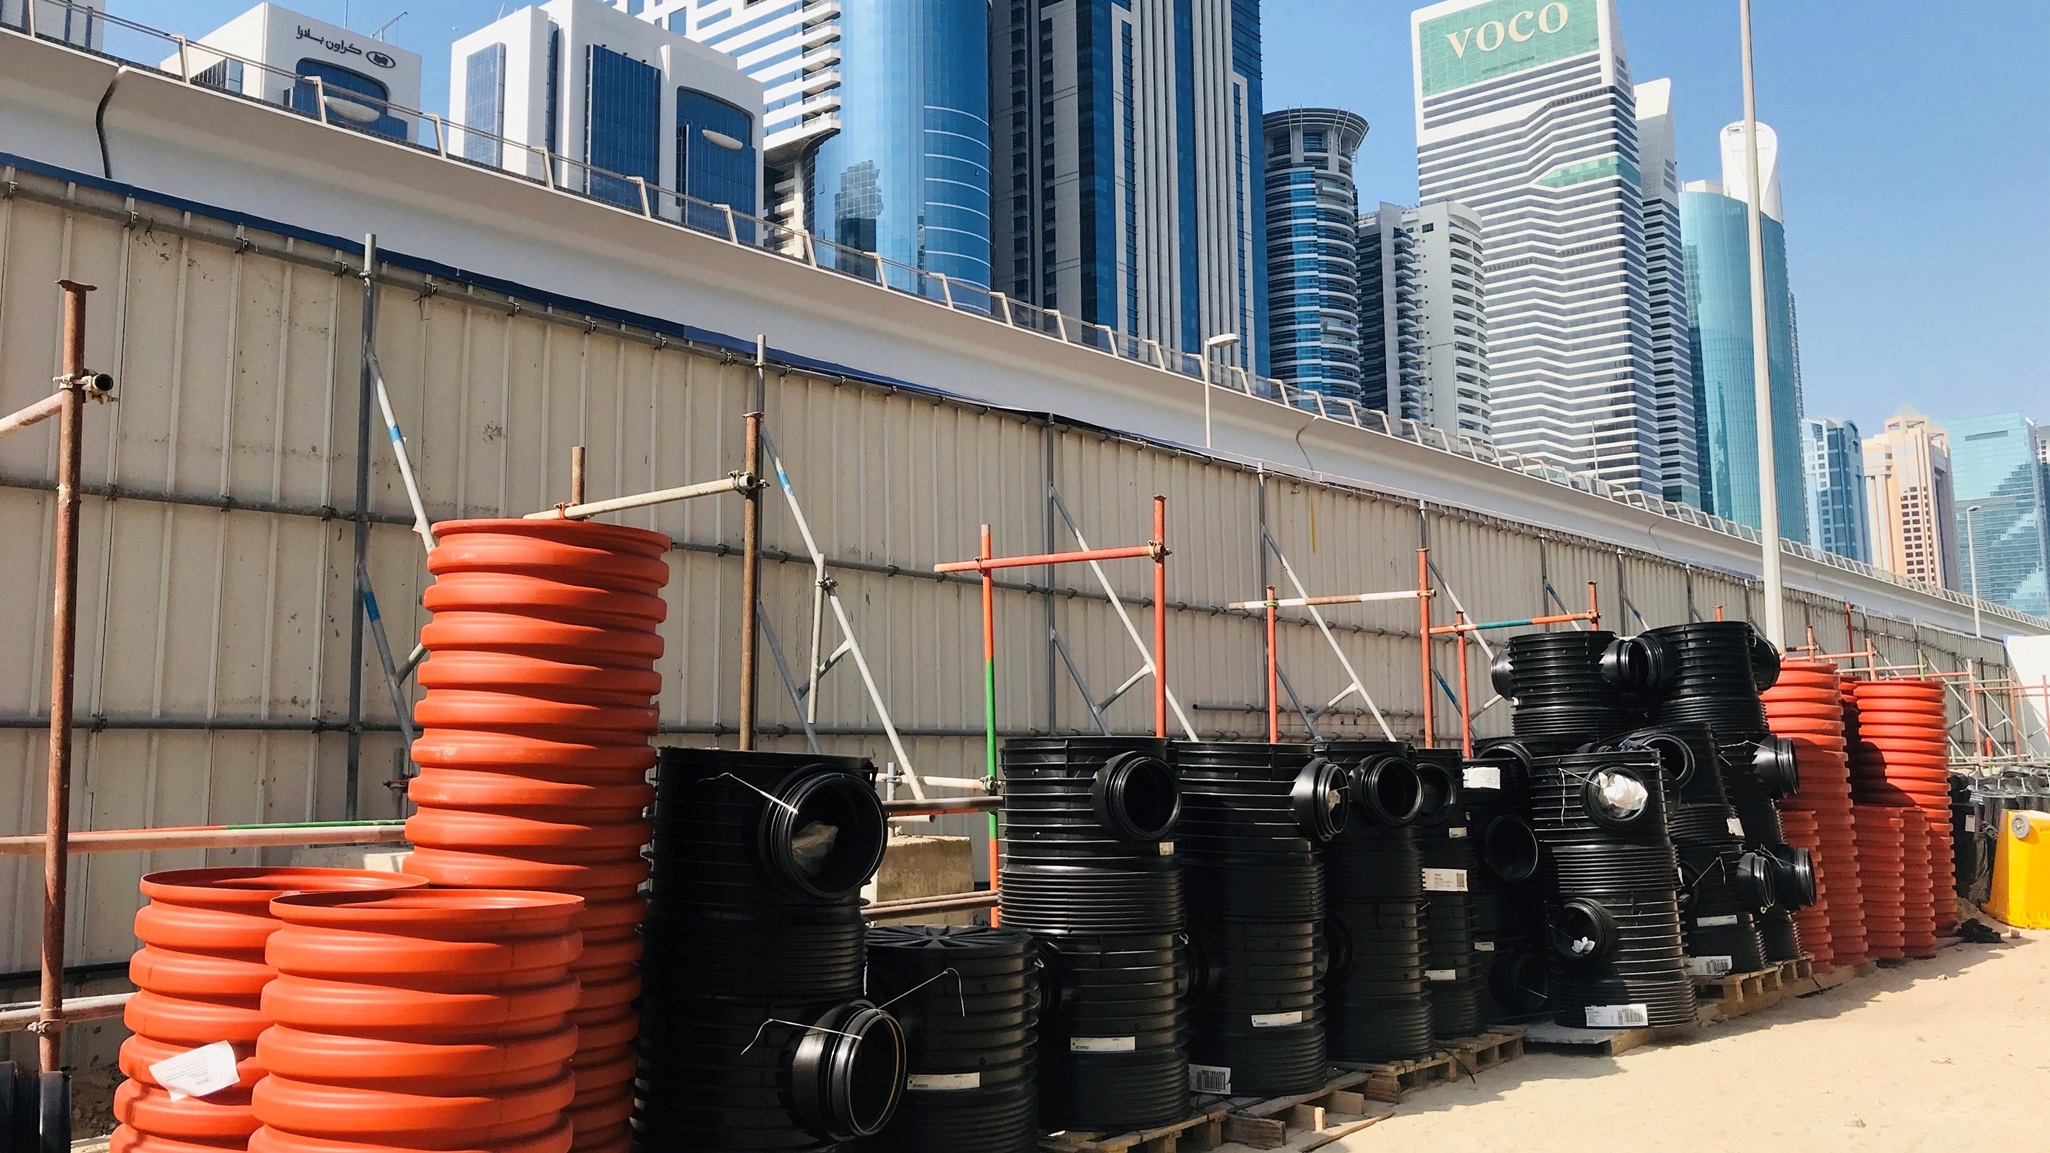 Fremtidssikring af byer – Næste generation af kloakker i Dubai